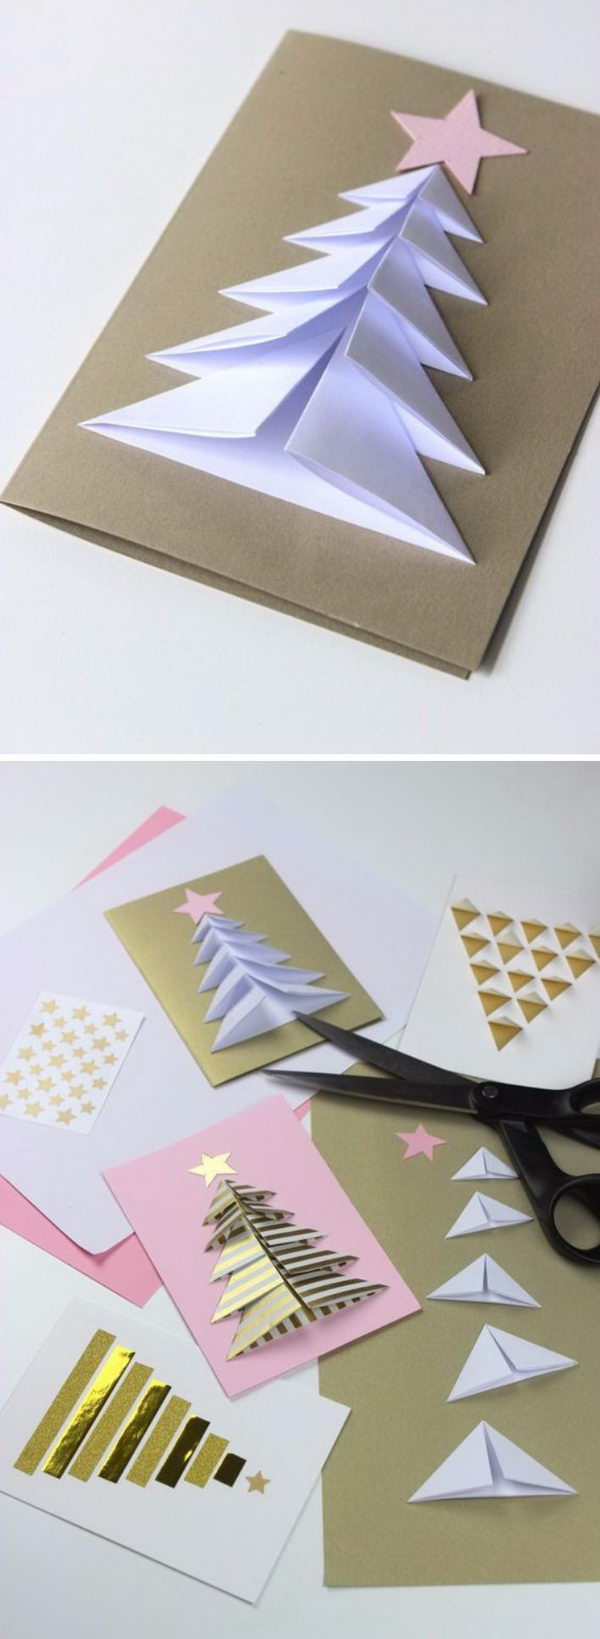 Easy Handmade Christmas Card Ideas